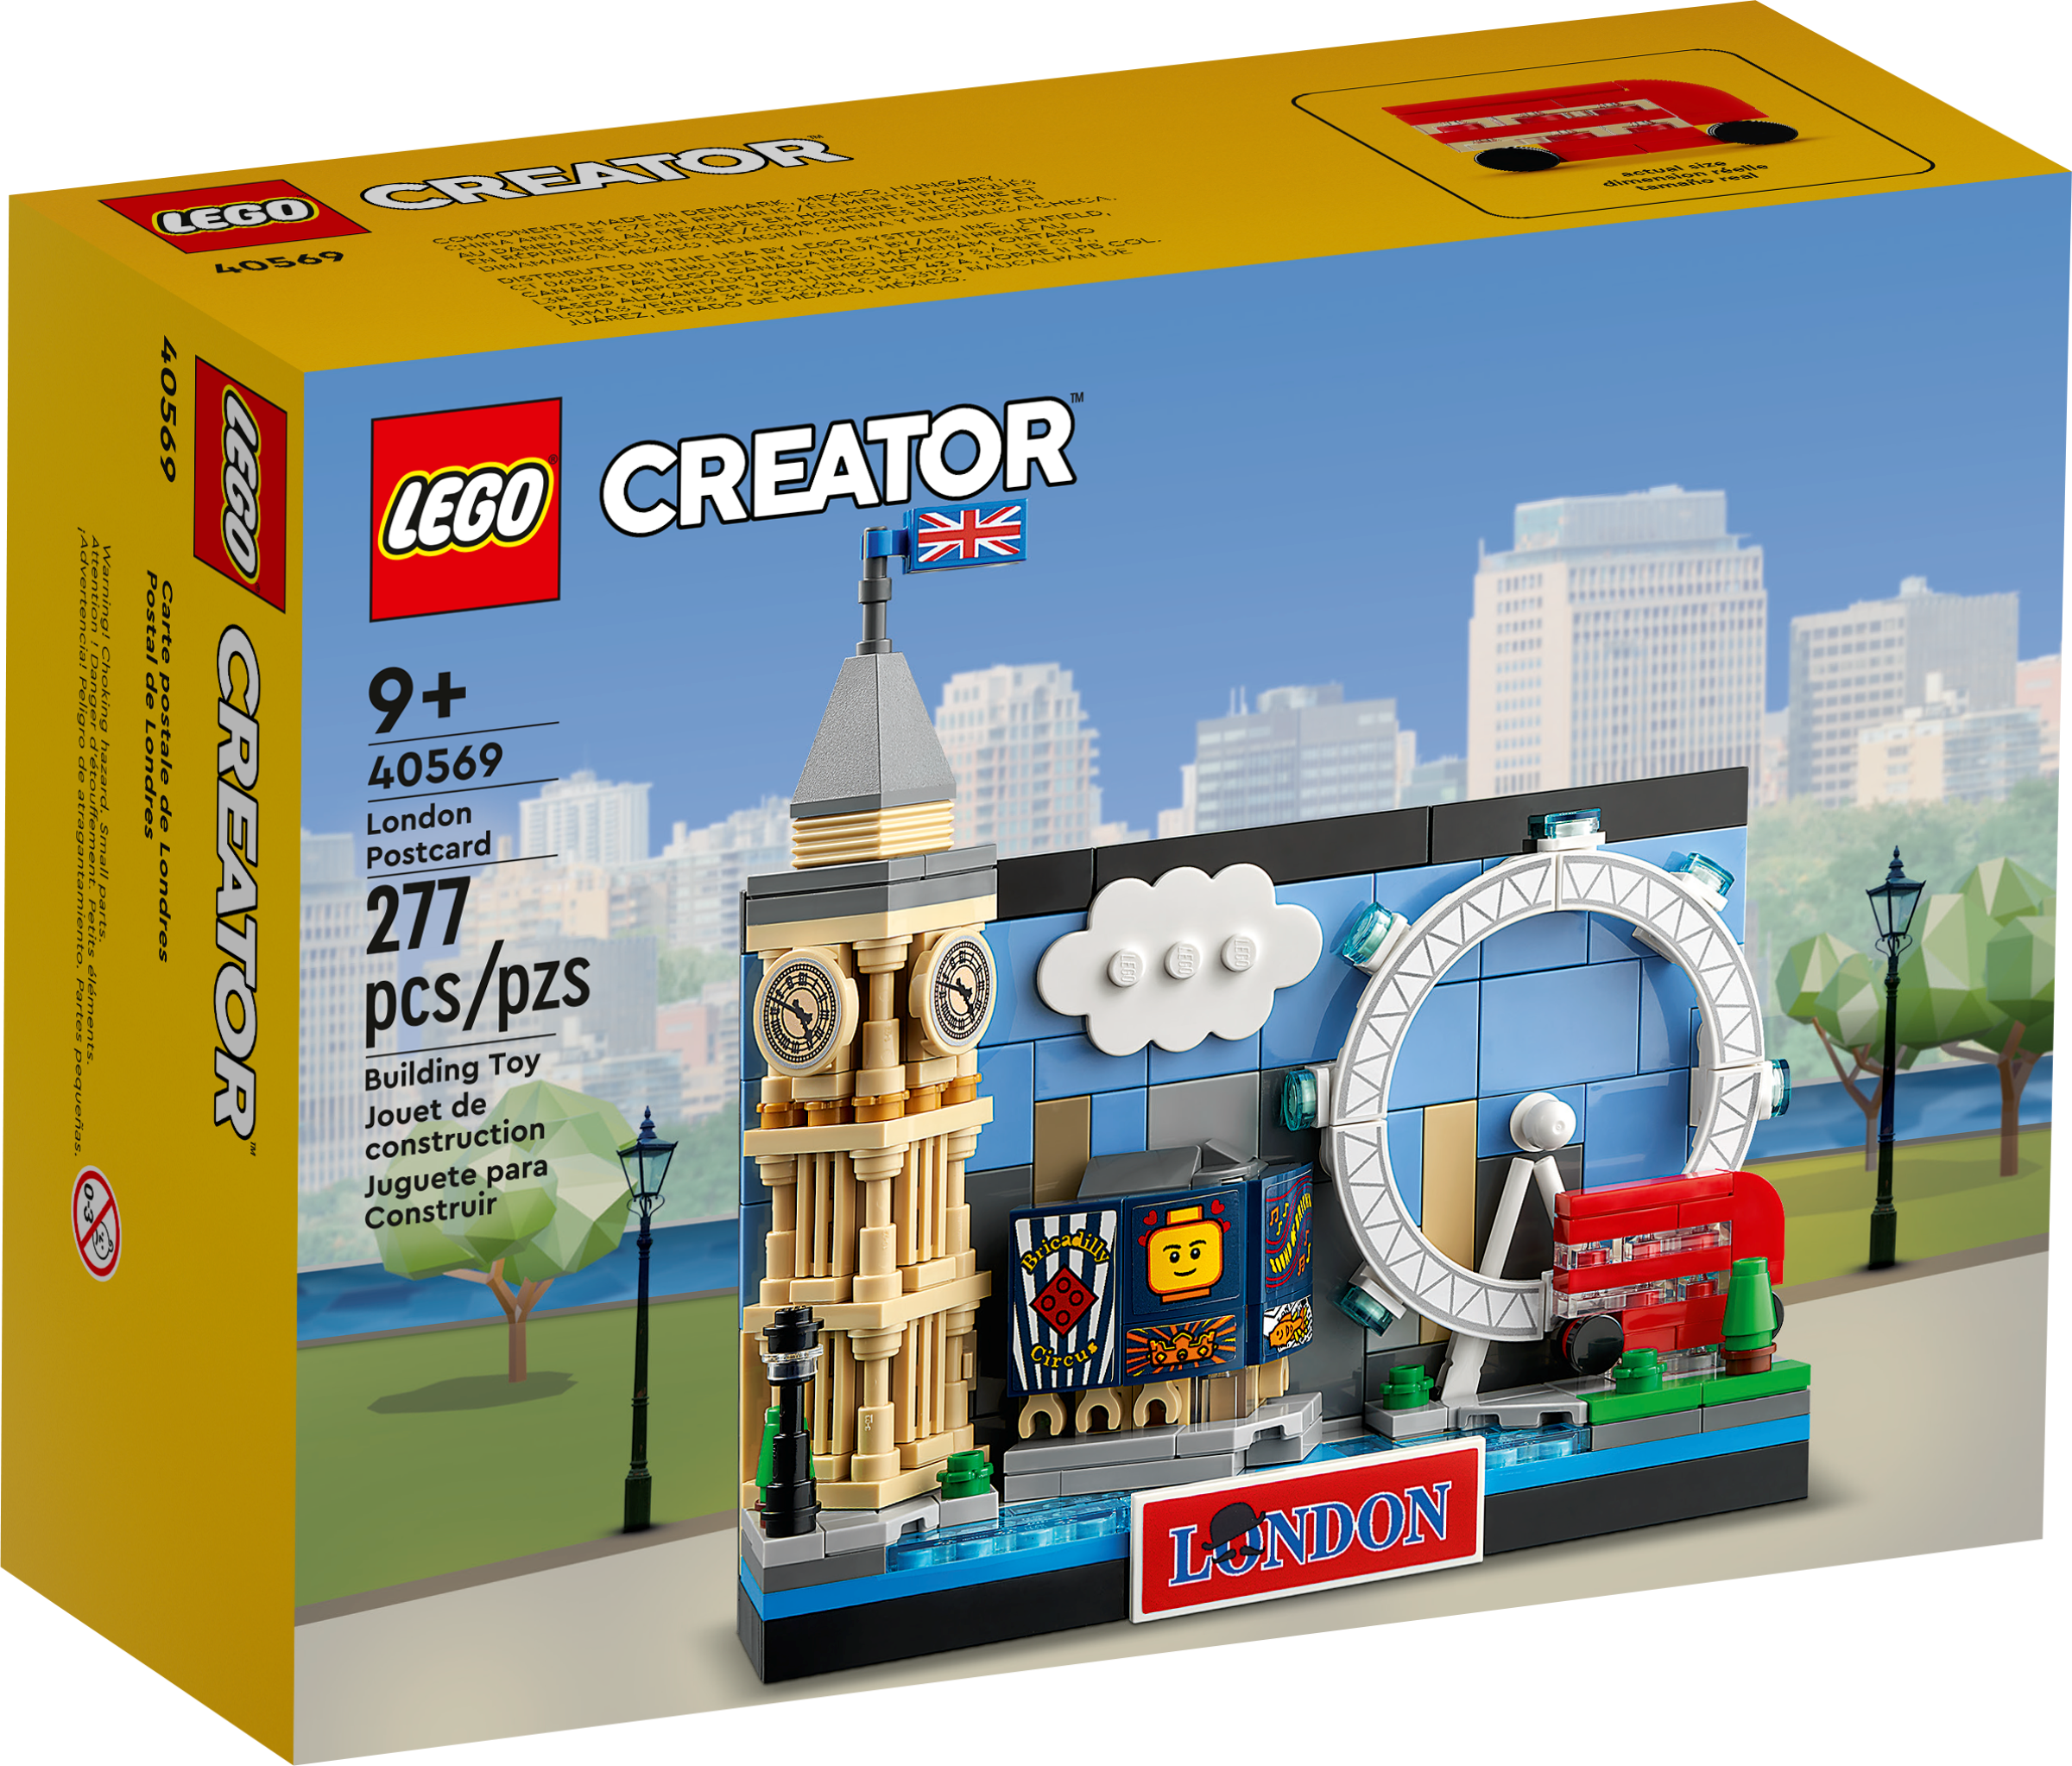 London Landmarks in LEGO 